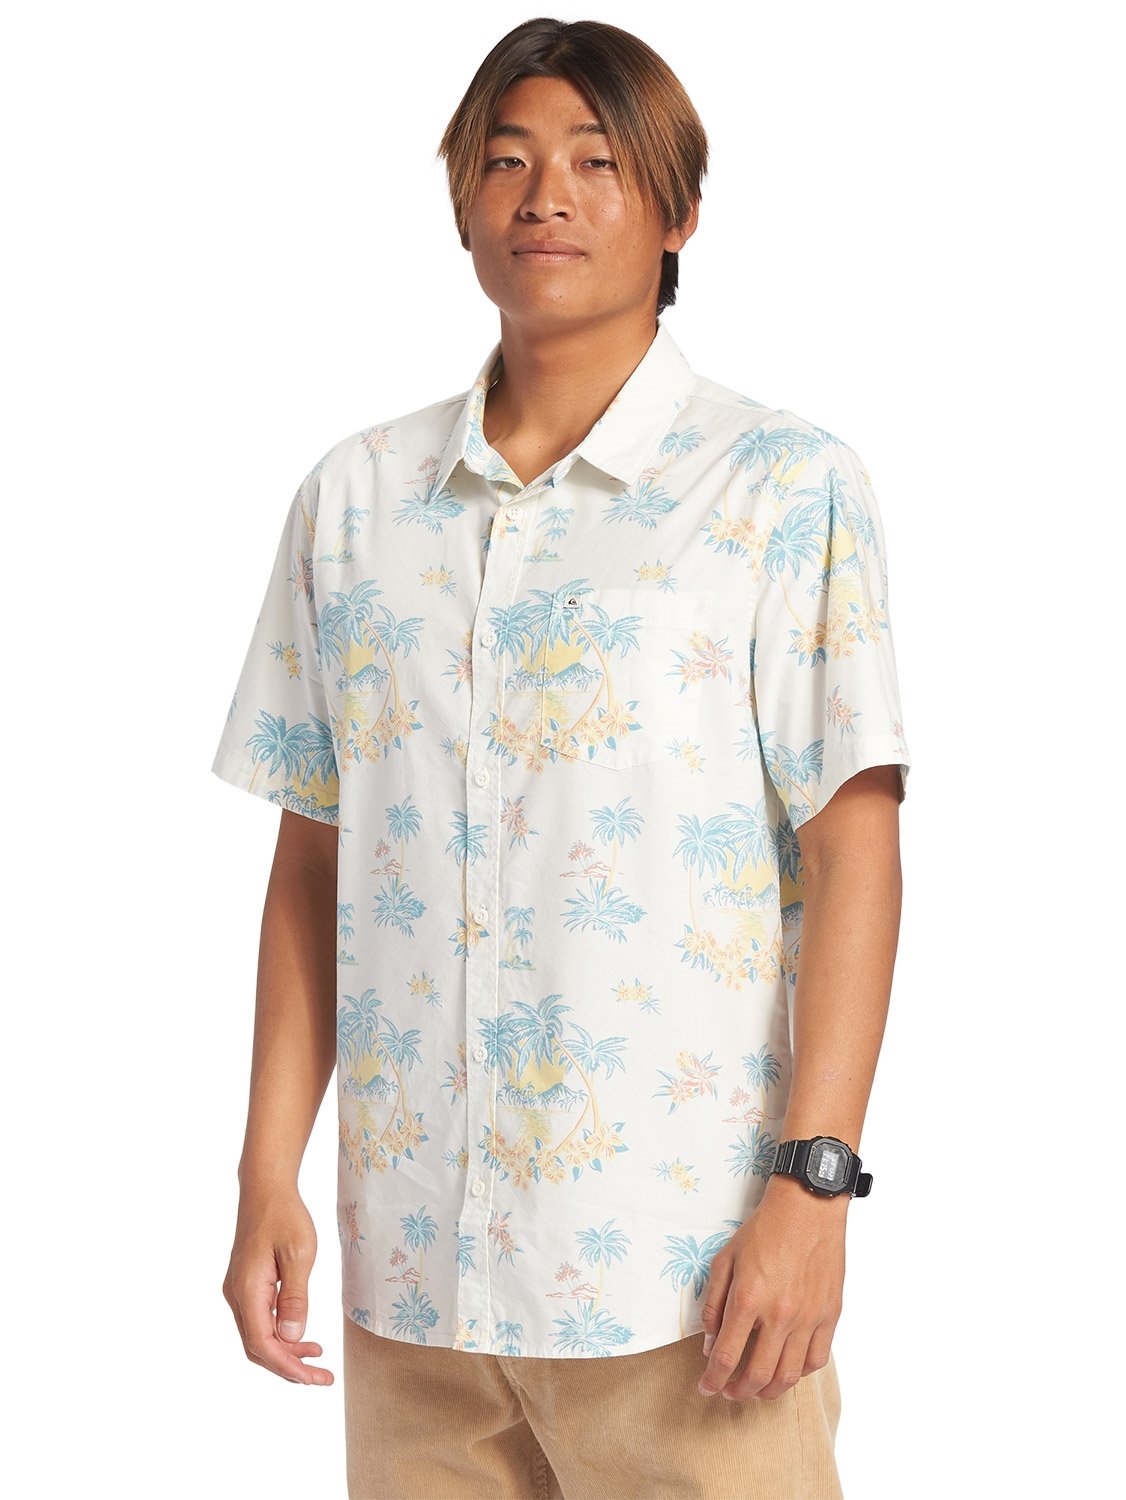 Quiksilver Men's Palm Spritz Shirt